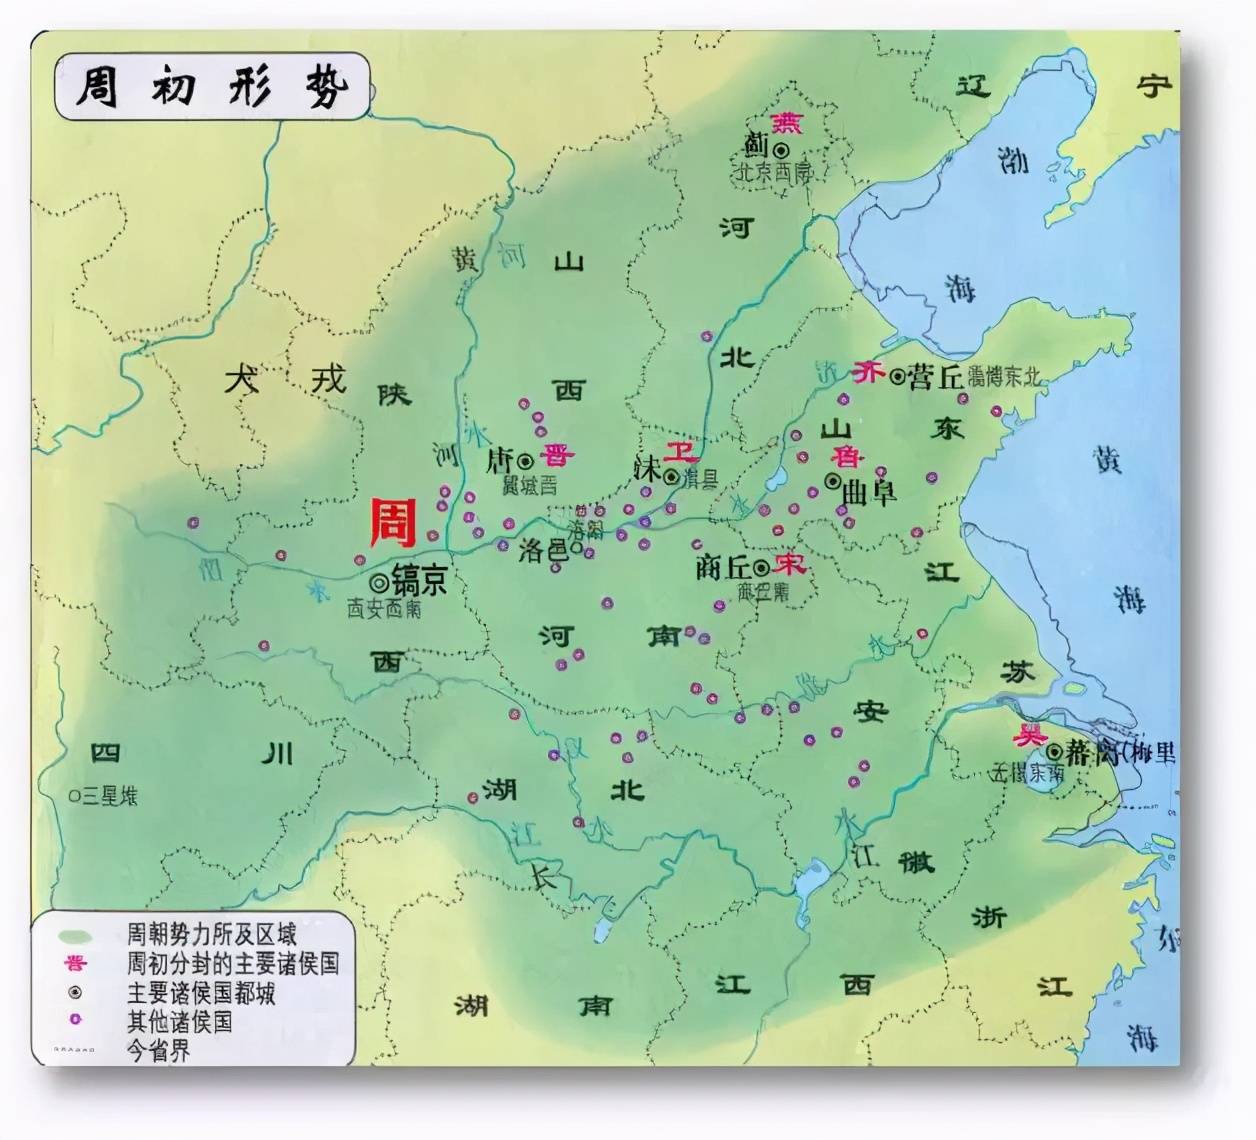 周朝地图:秦在最西边